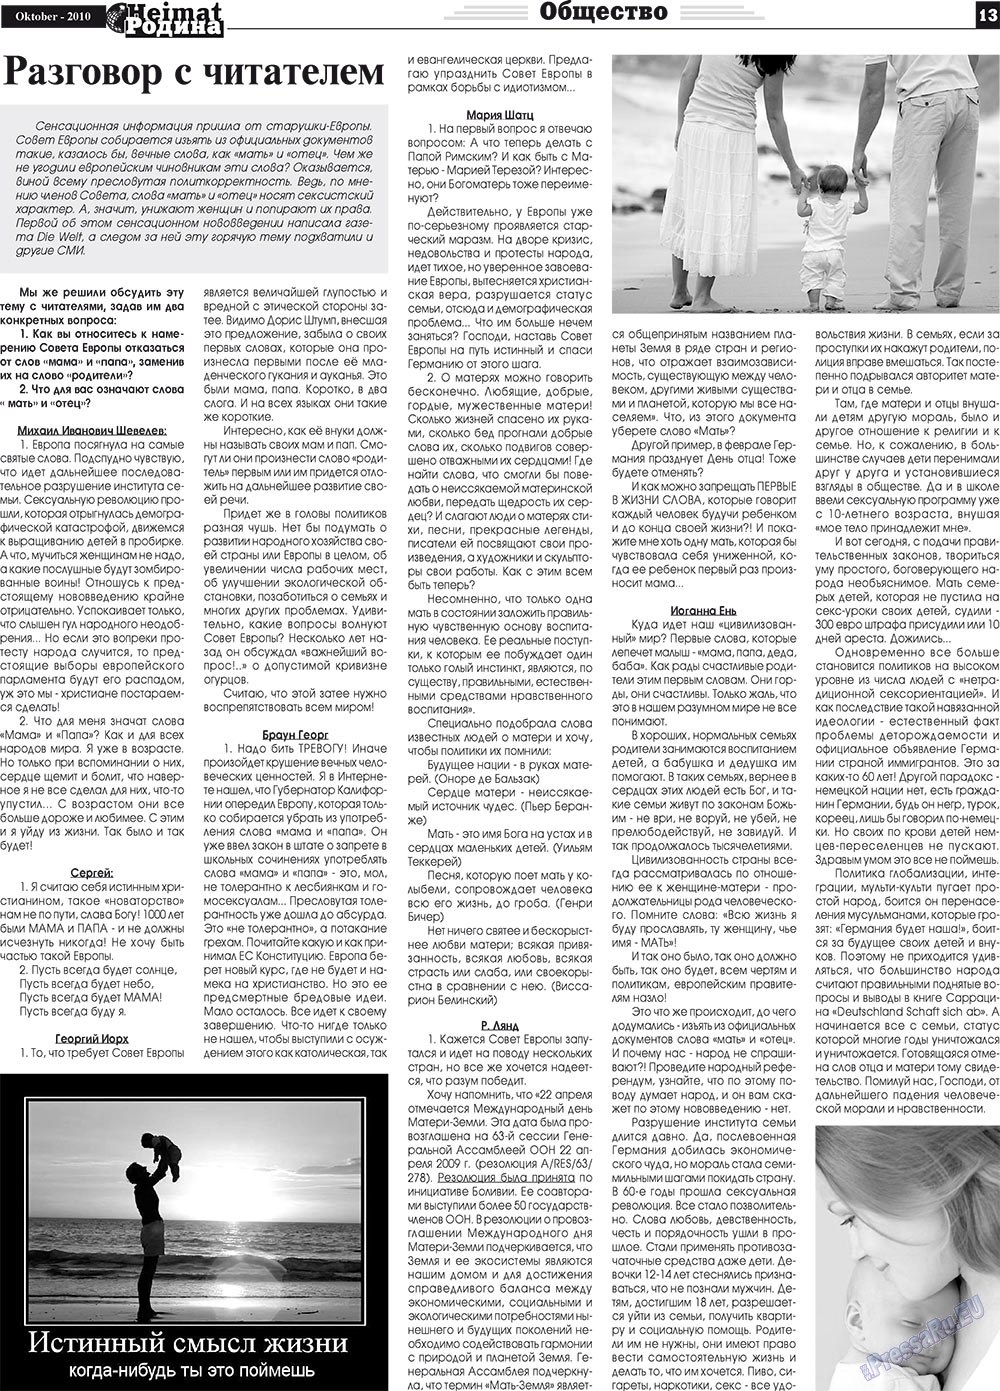 Heimat-Родина (газета). 2010 год, номер 10, стр. 13